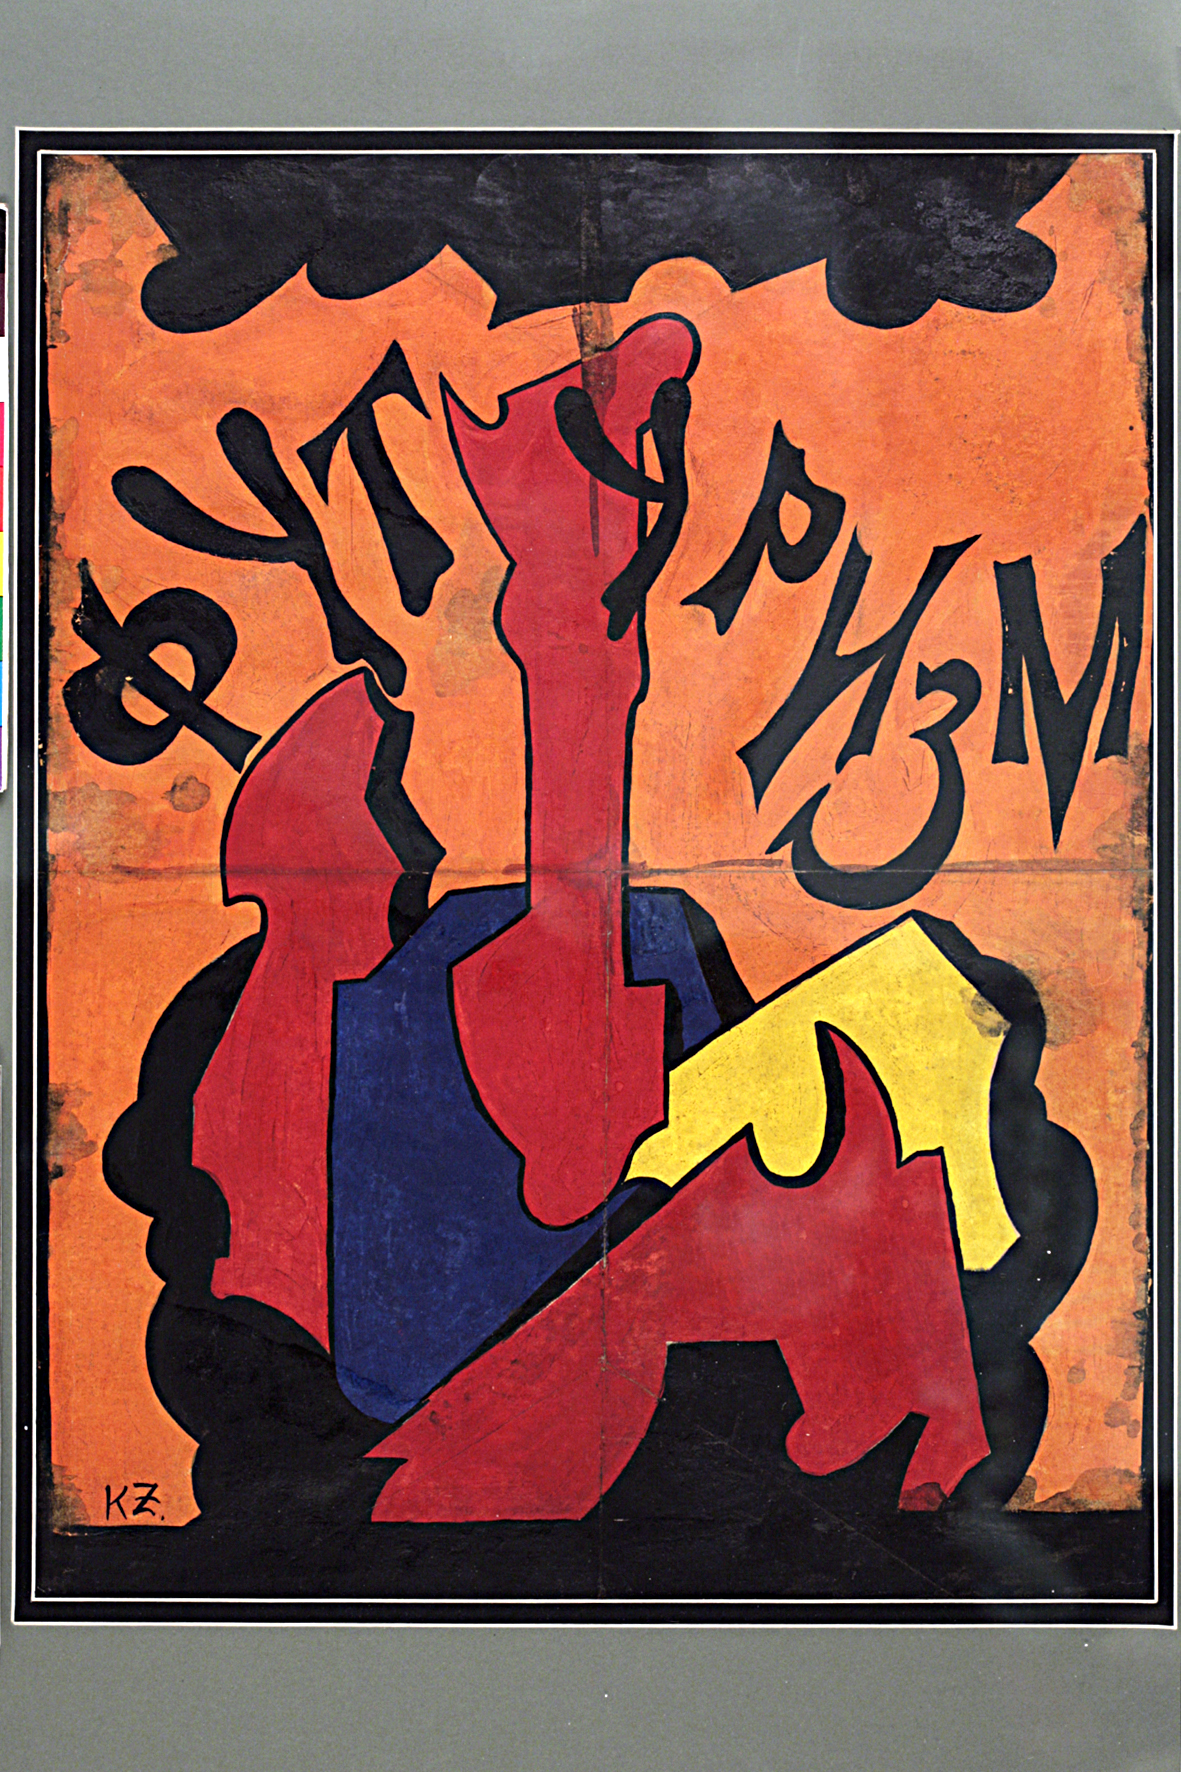 ესკიზი აფიშისთვის; გუაში, მუყაო, ტფილისი 1918. ს. ალანიას კოლექცია